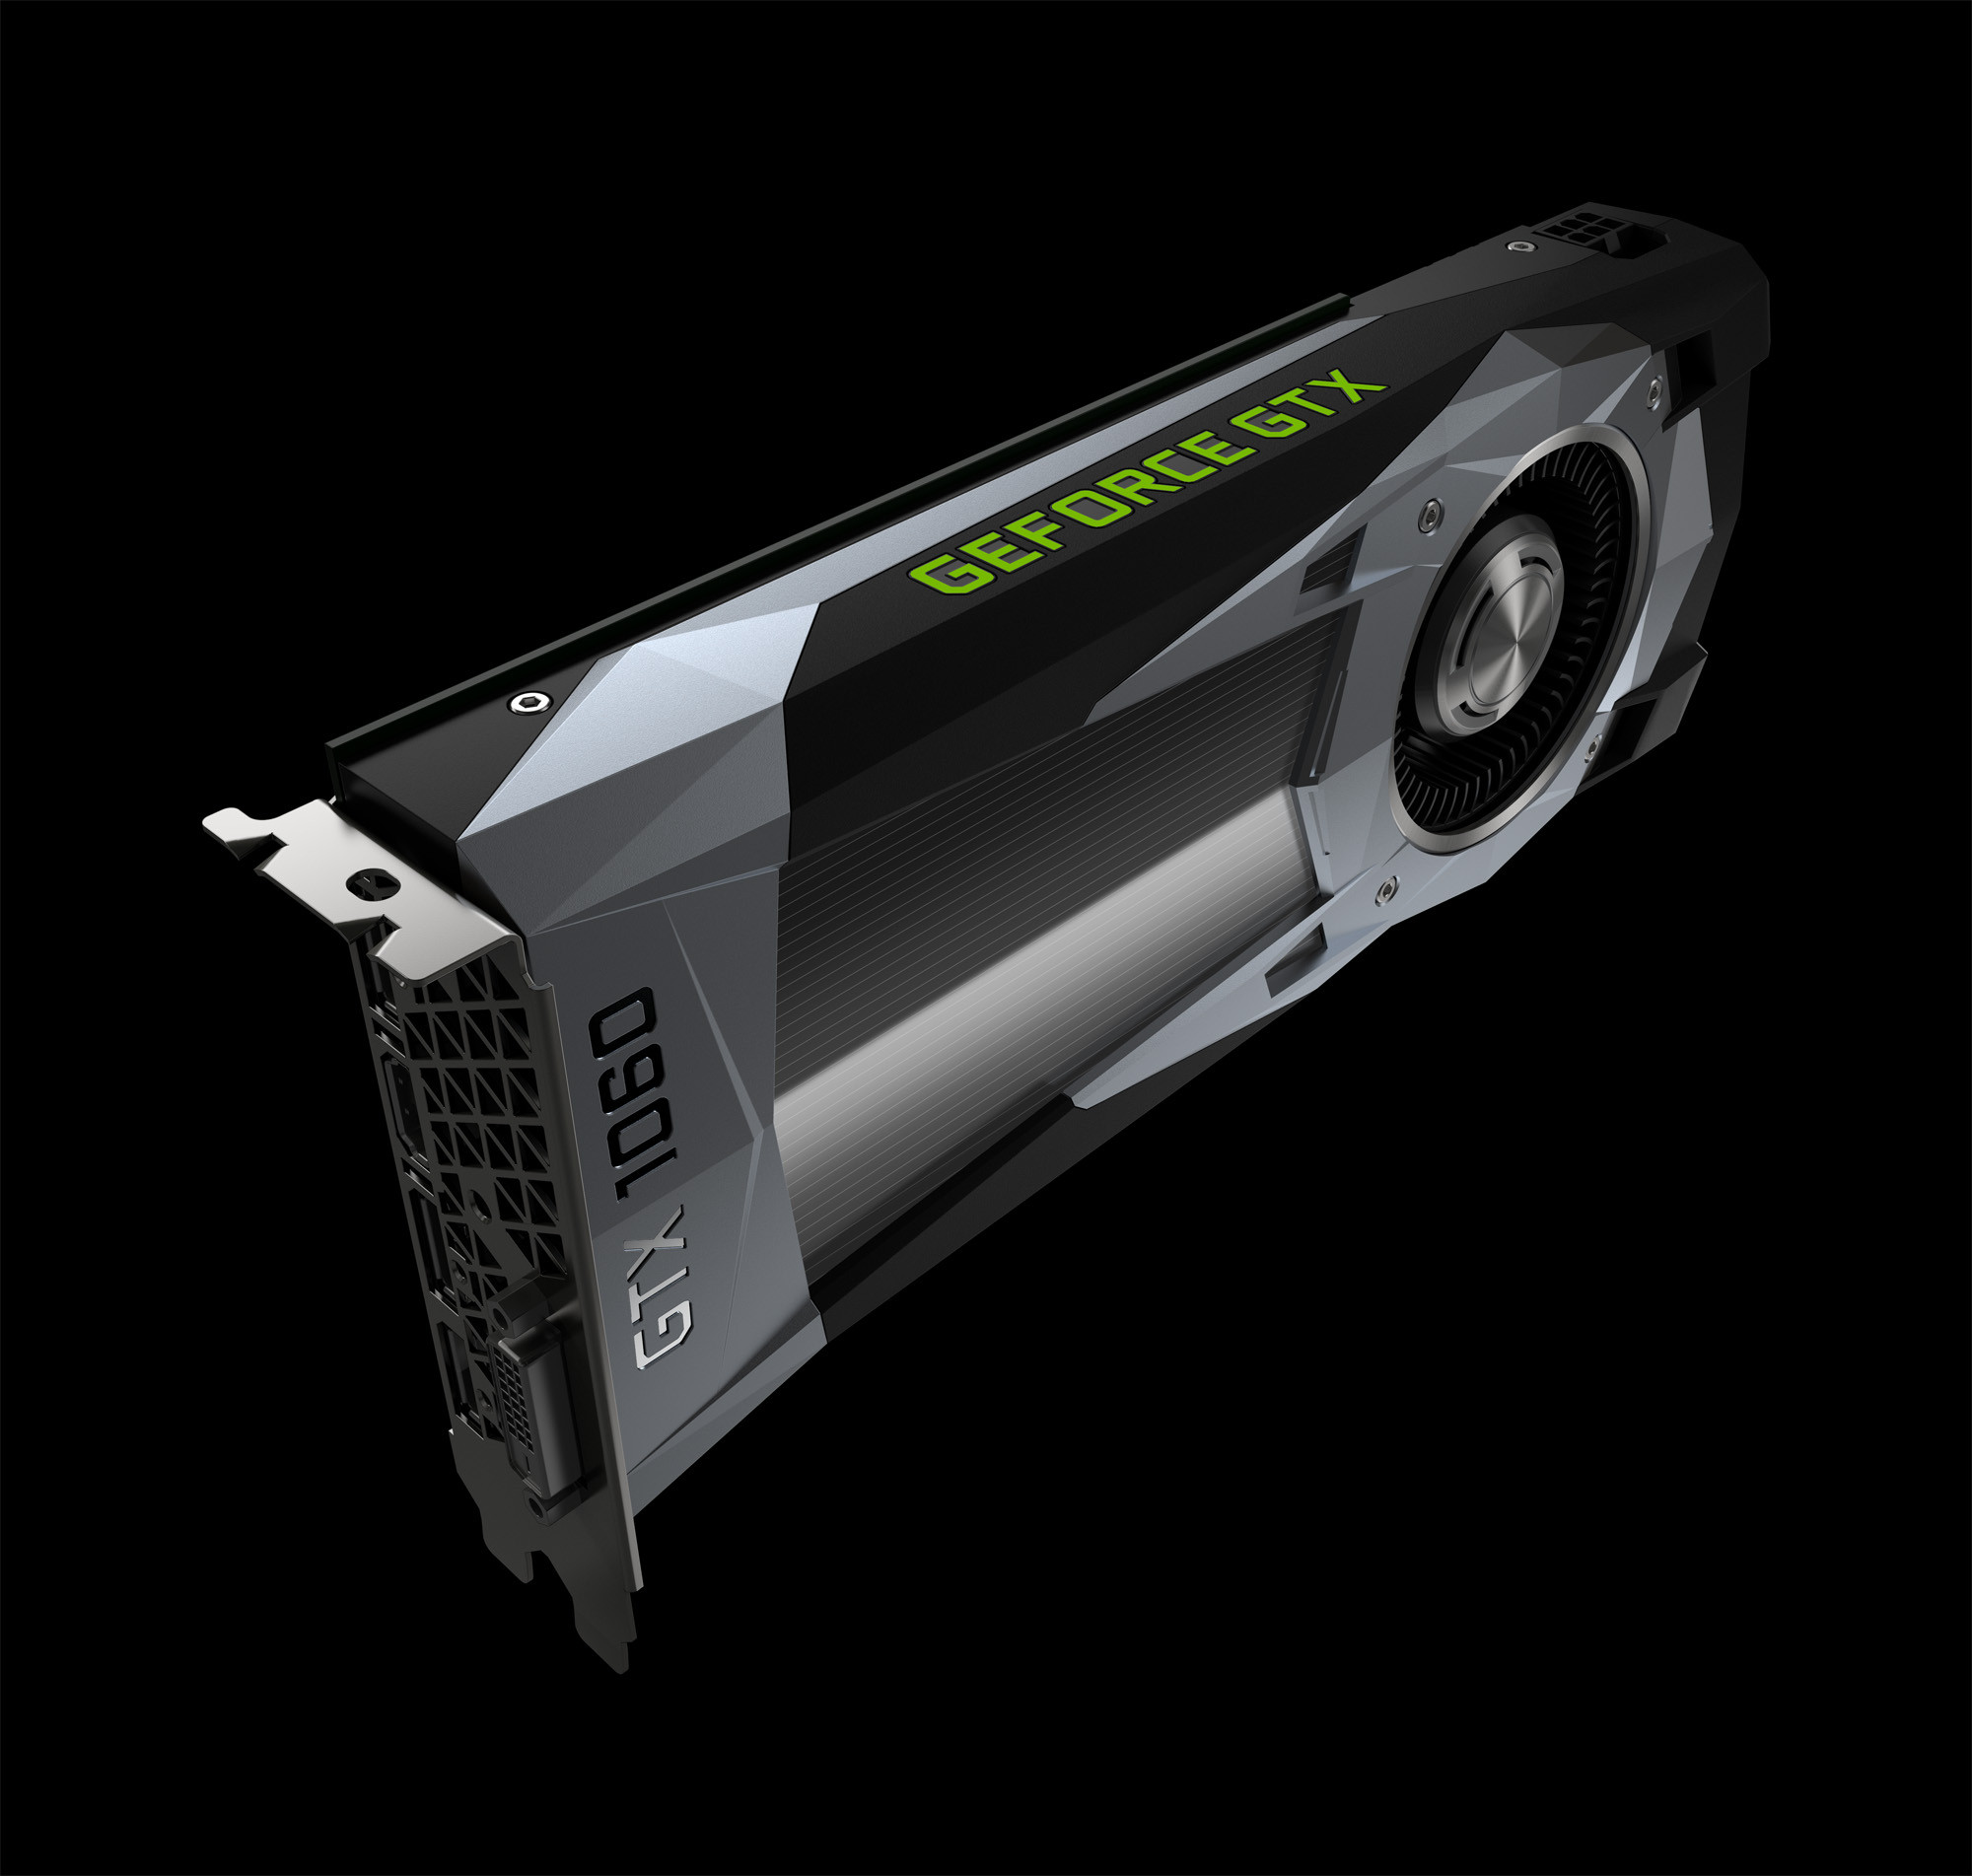 Immagine pubblicata in relazione al seguente contenuto: NVIDIA potrebbe utilizzare la GPU della GeForce GTX 1080 per le GeForce GTX 1060 | Nome immagine: news28206_NVIDIA-GeForce-GTX-1060_1.jpg